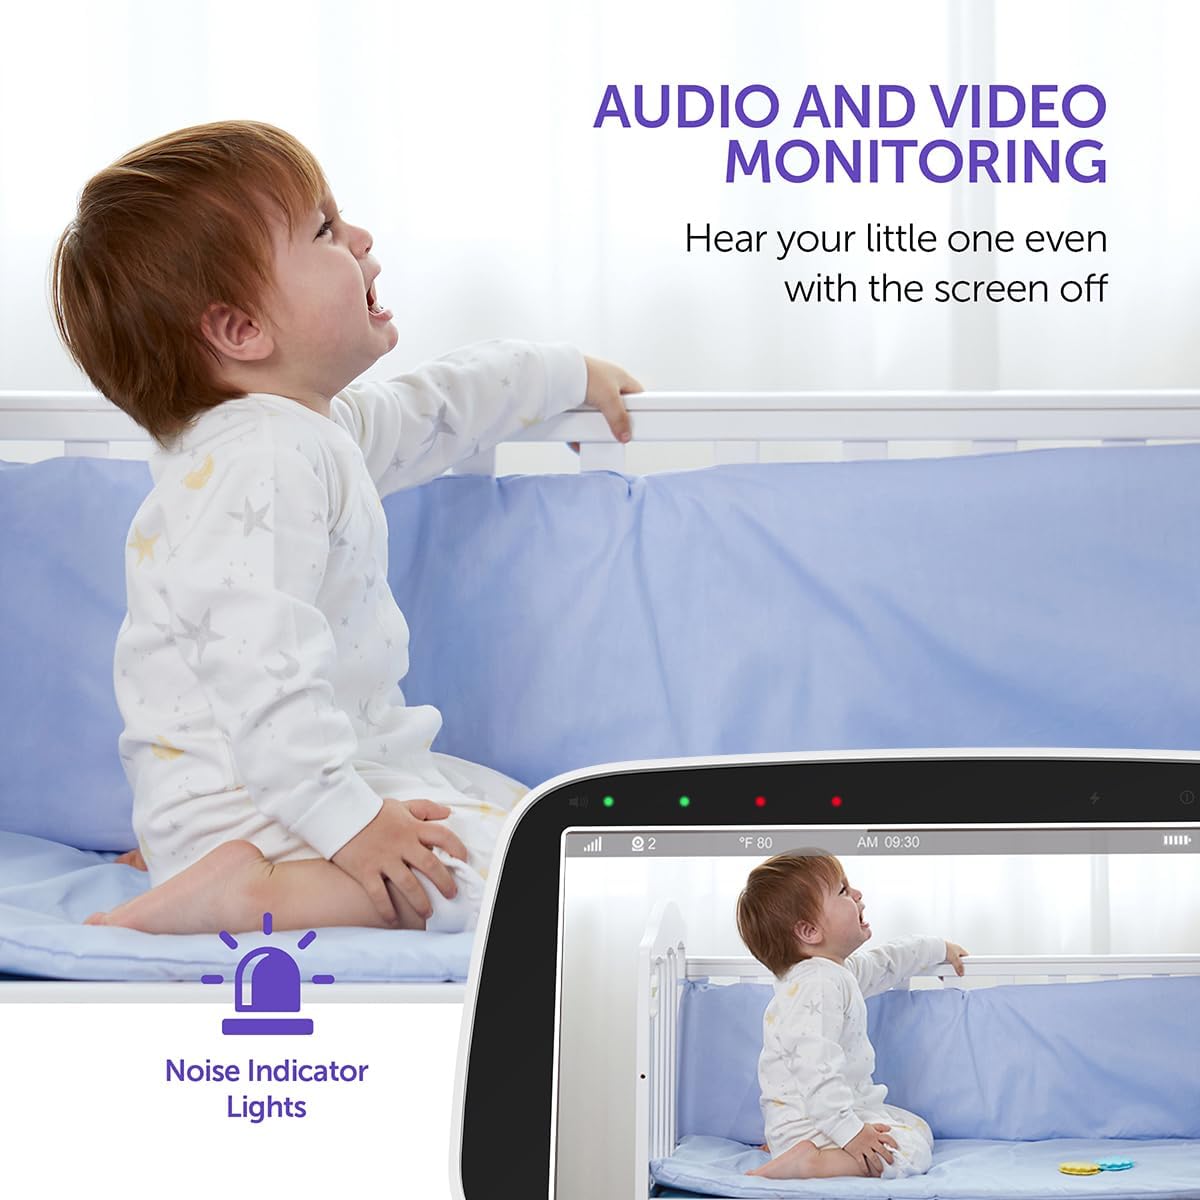 Hipp Baby Monitor, 5" 720P Video Baby Monitor with Pan-Tilt-Zoom Camera, Audio and Visual Monitoring, Infrared Night Vision and Thermal Monitor2-Way Talk, 900ft Range, 4500mAh Recharg